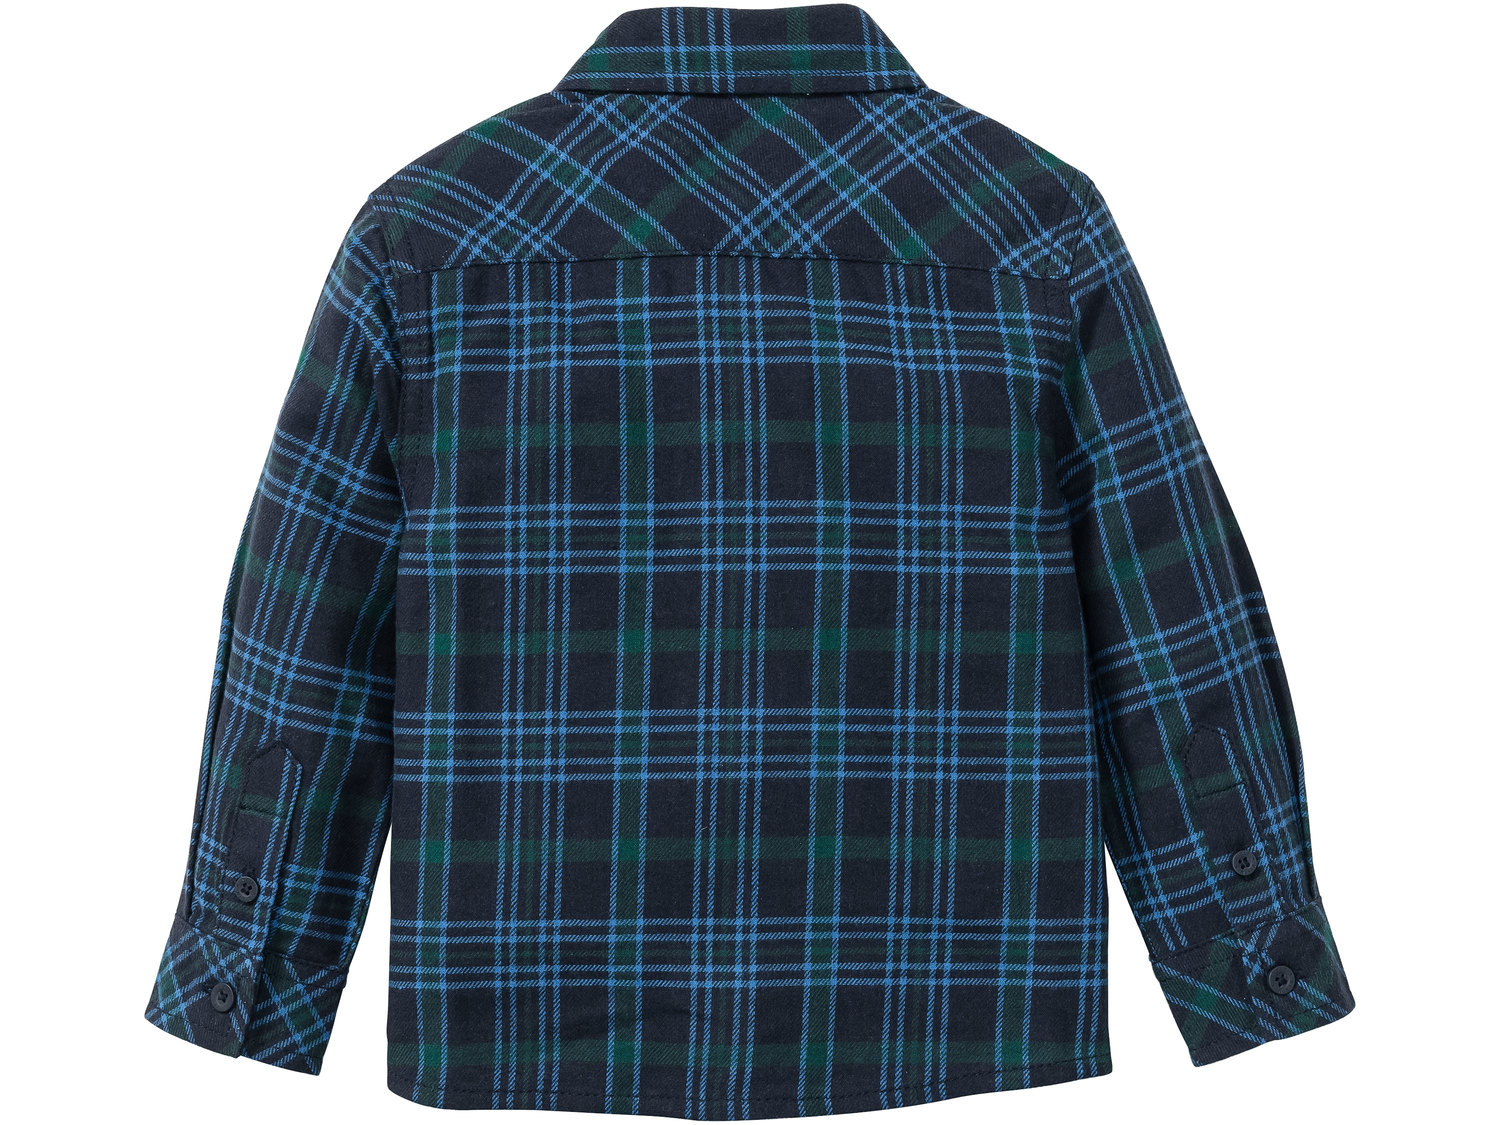 Koszula flanelowa Livergy, cena 24,99 PLN 
- koszula flanelowa w kratkę to klasyczny ...